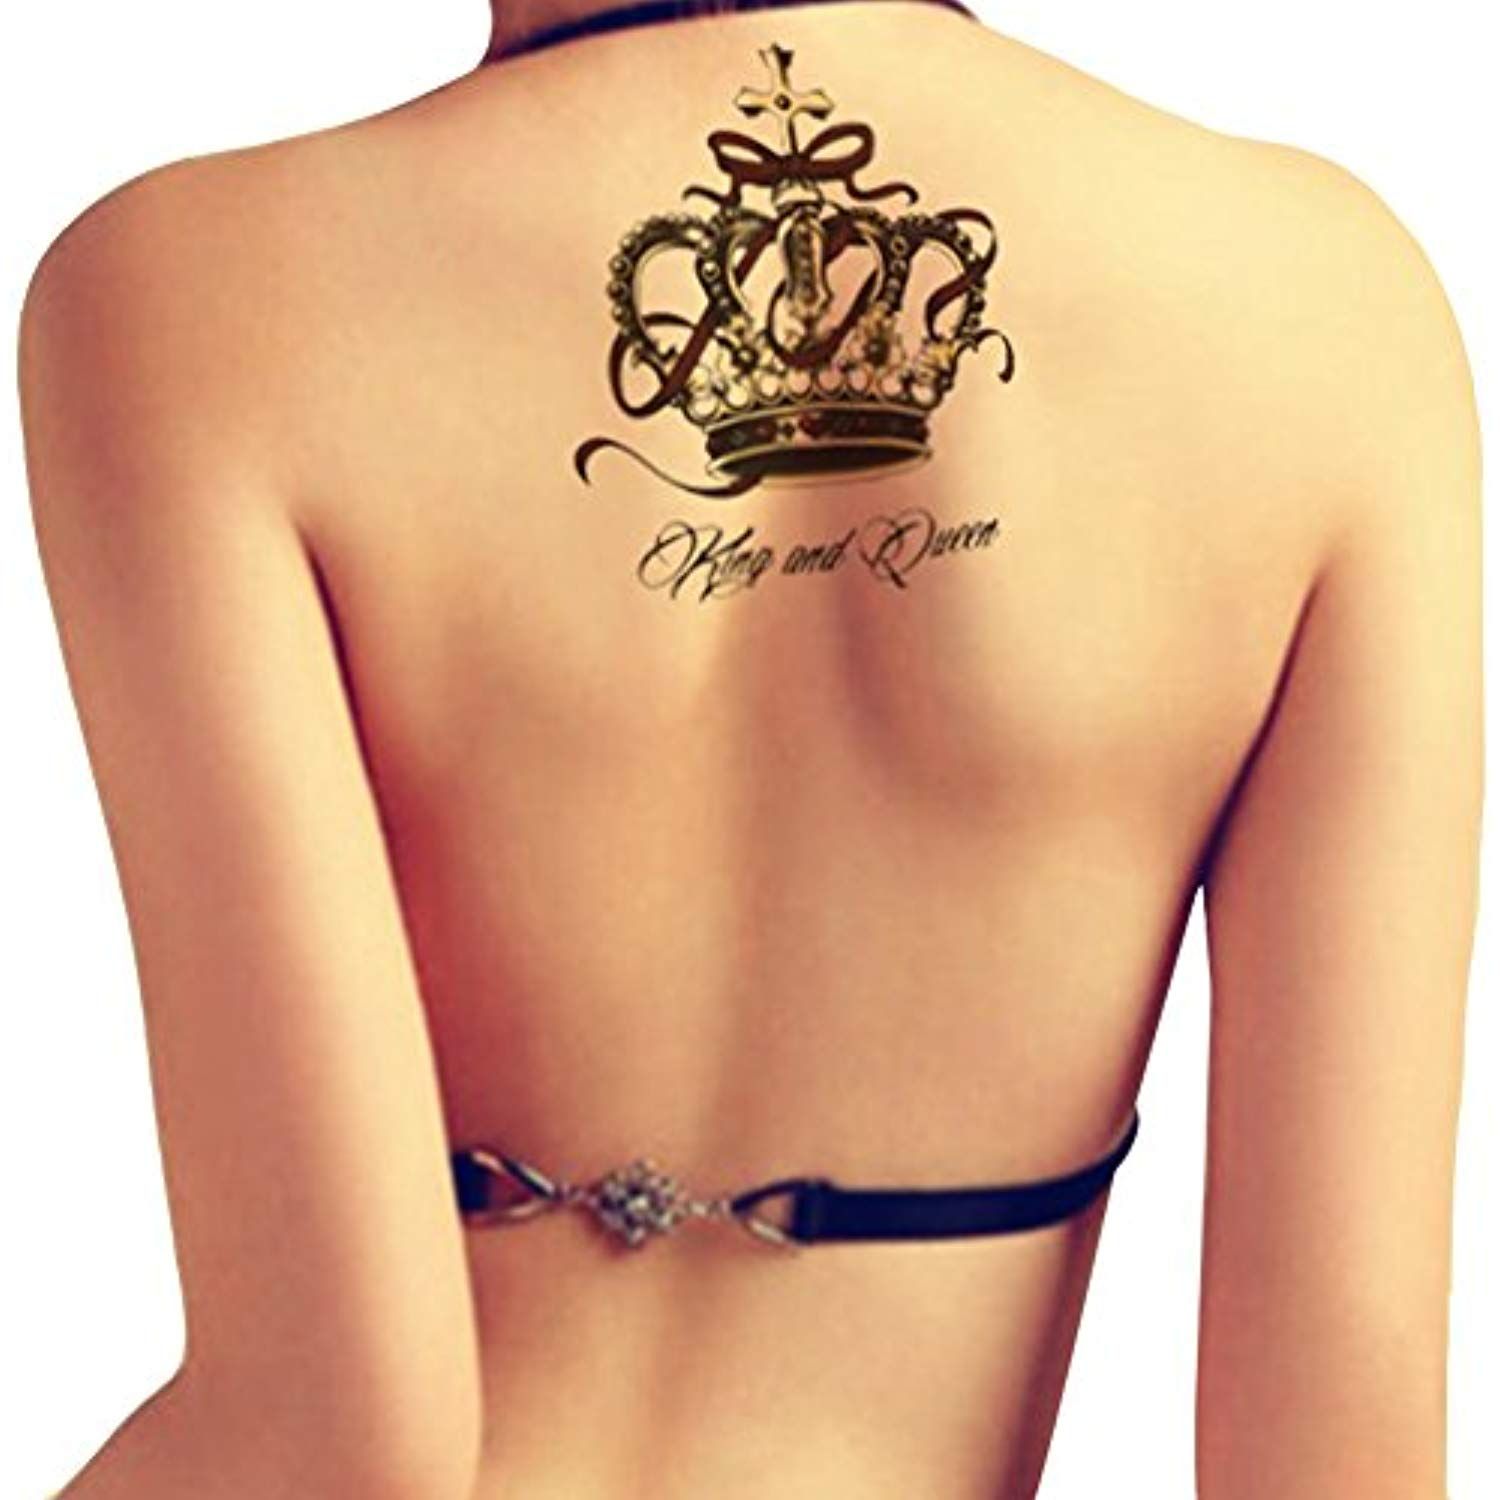 Queen tattoos for women